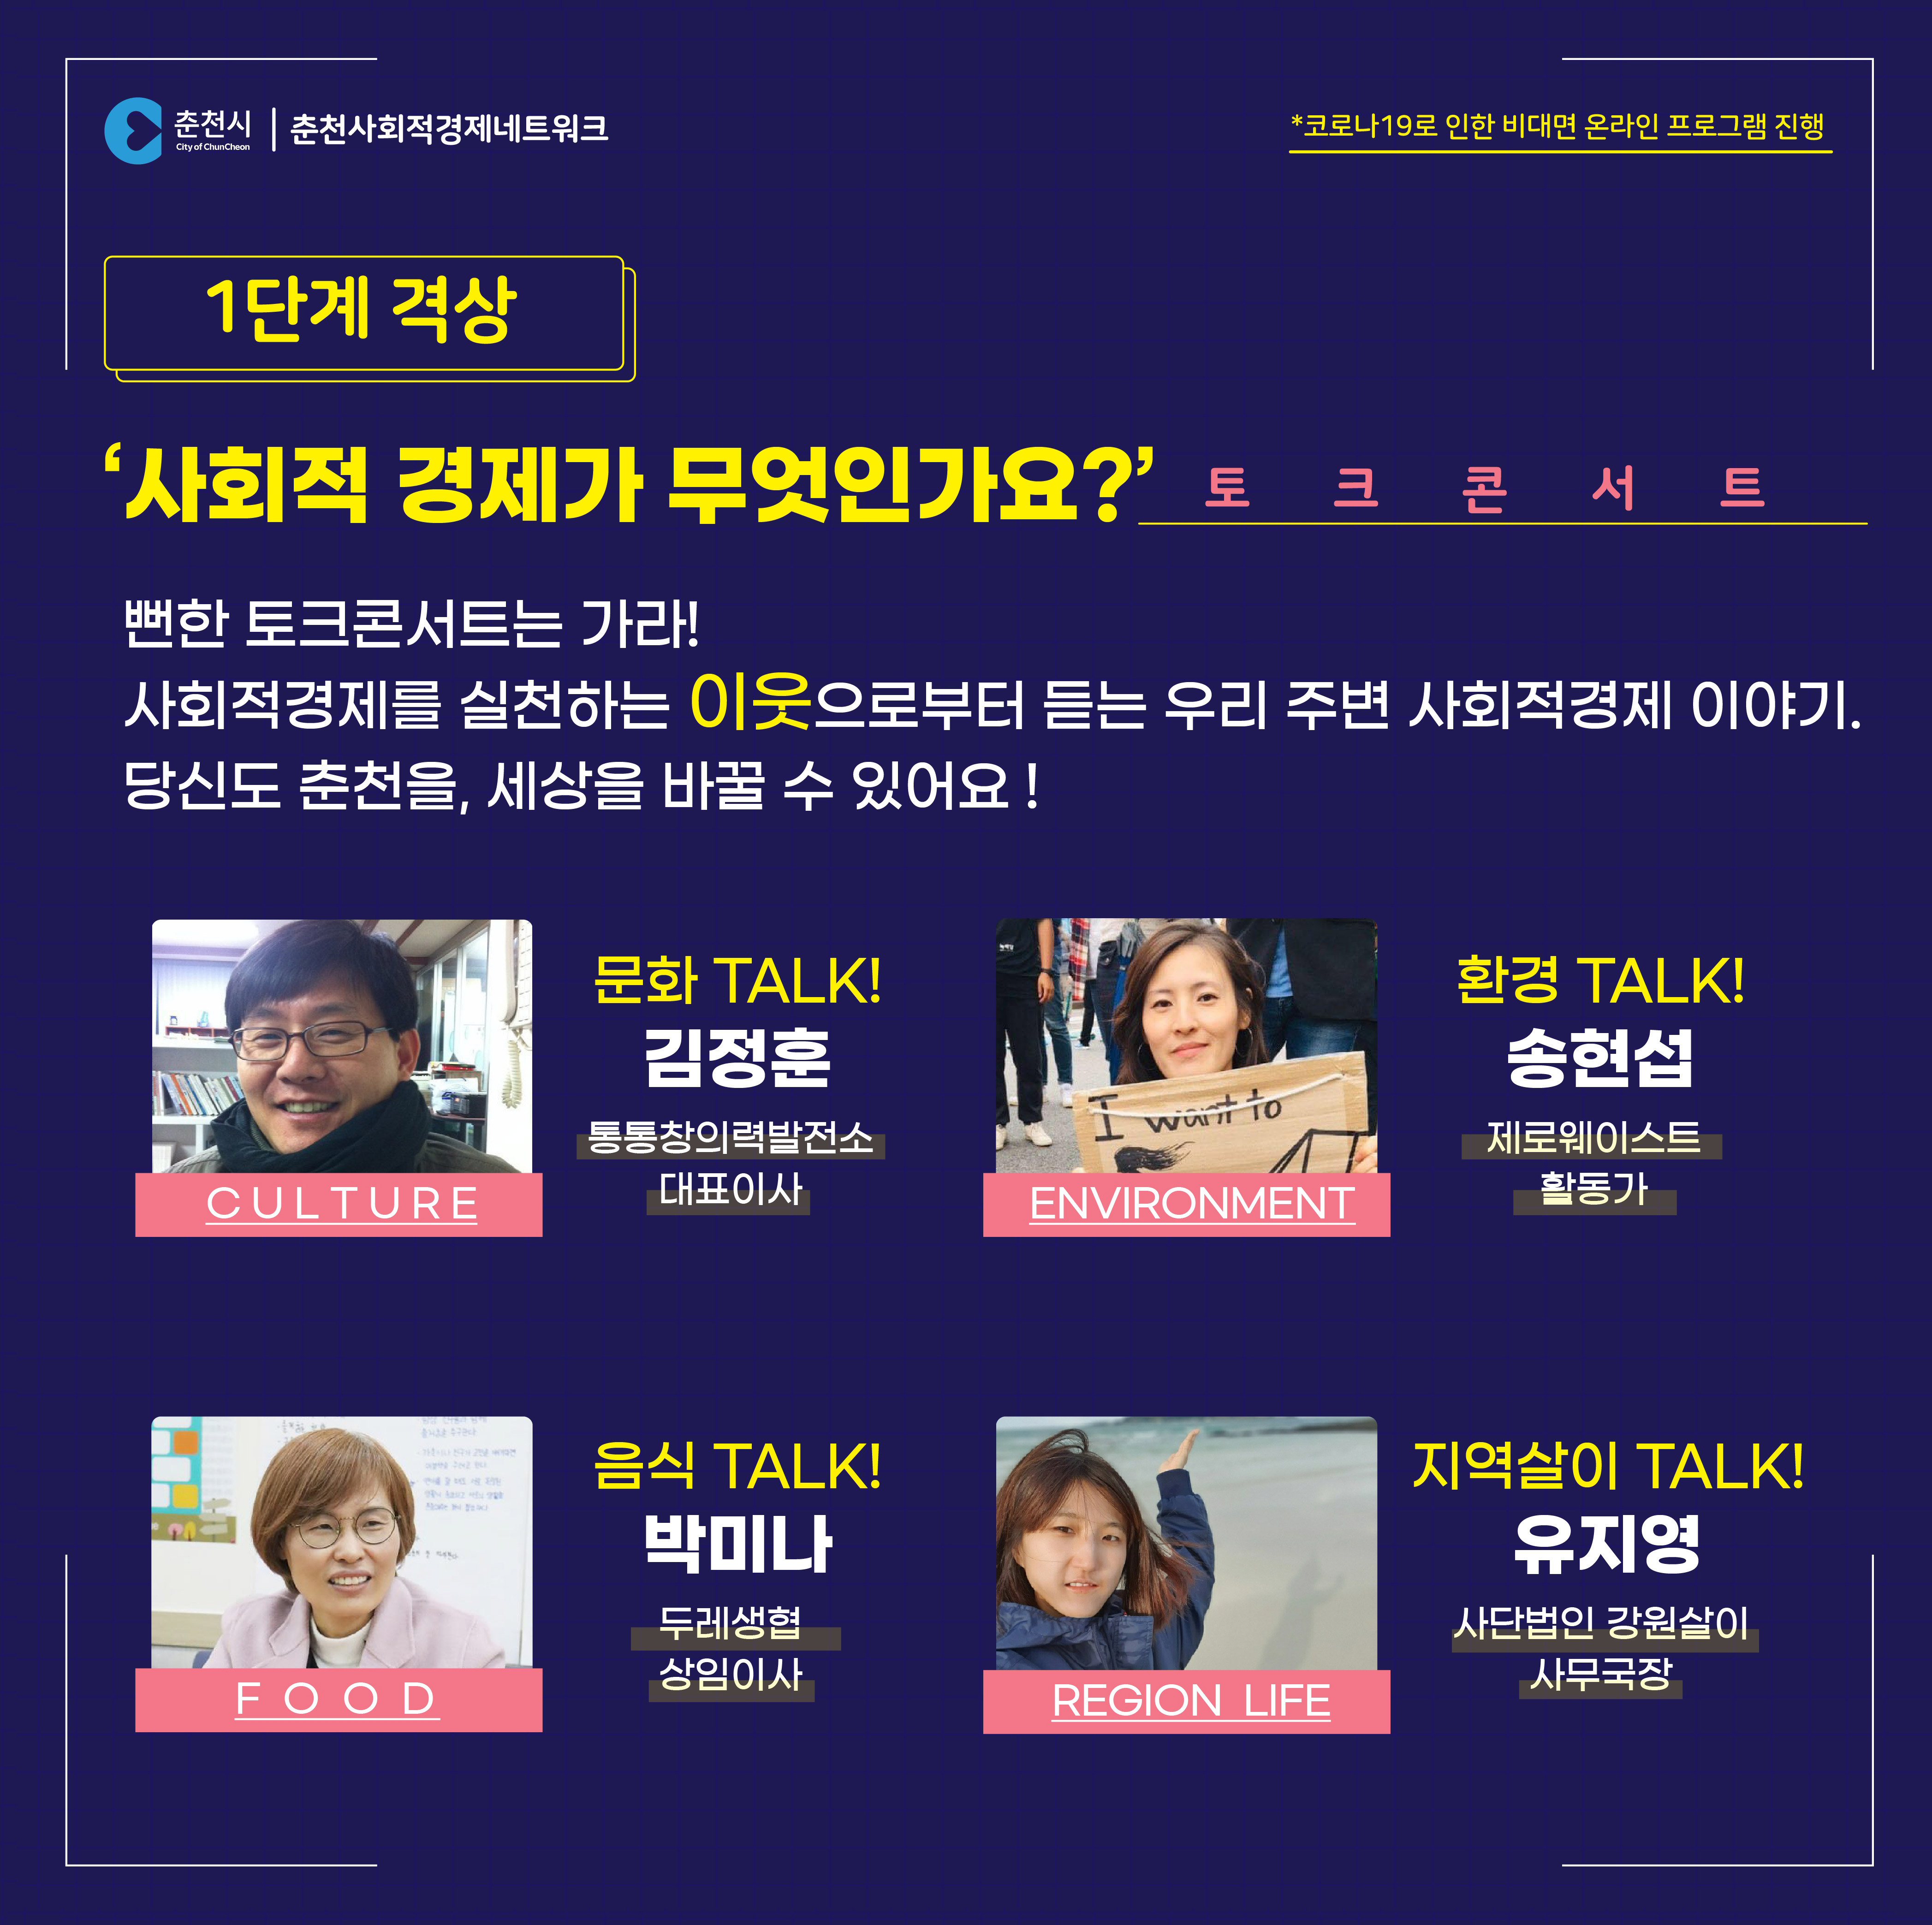 2020 춘천 사회적경제 온라인 한마당 개최 안내